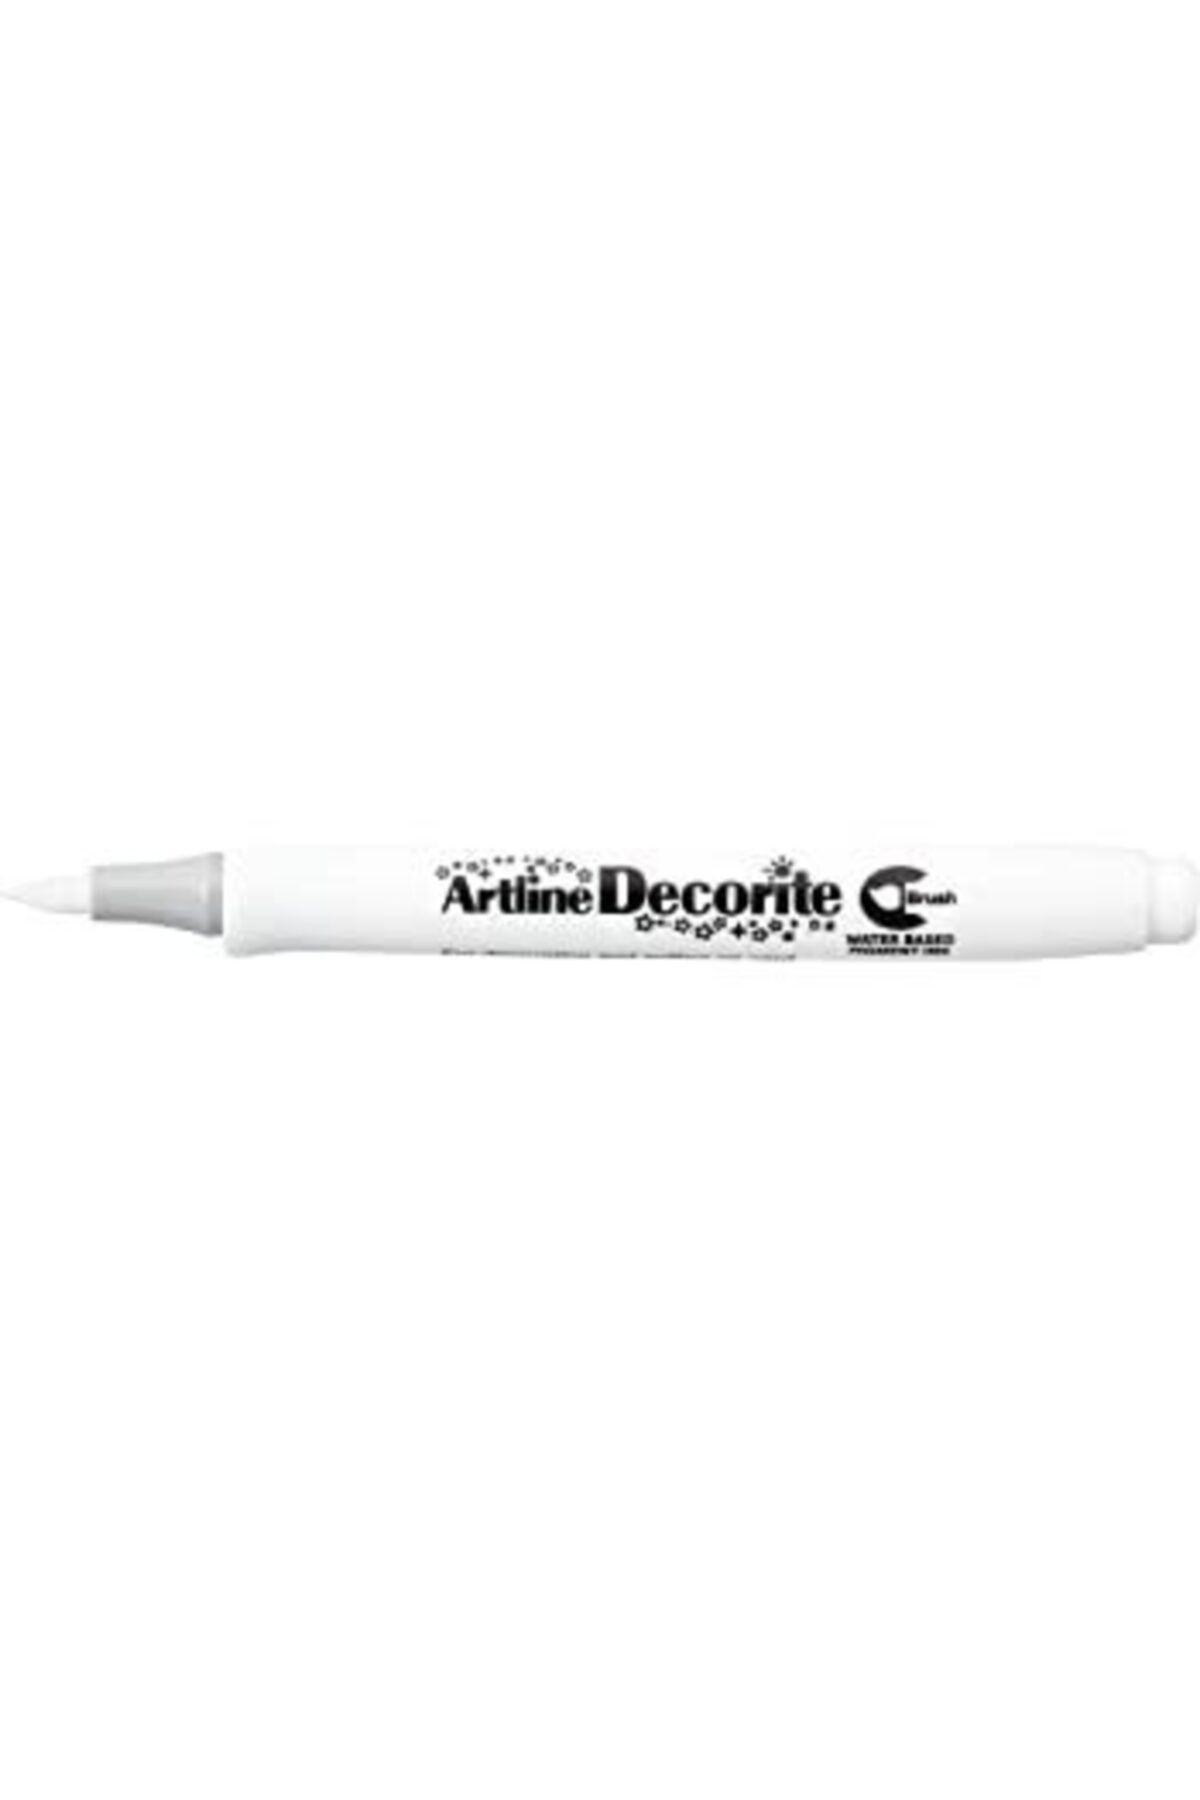 artline Decorite Brush Marker White